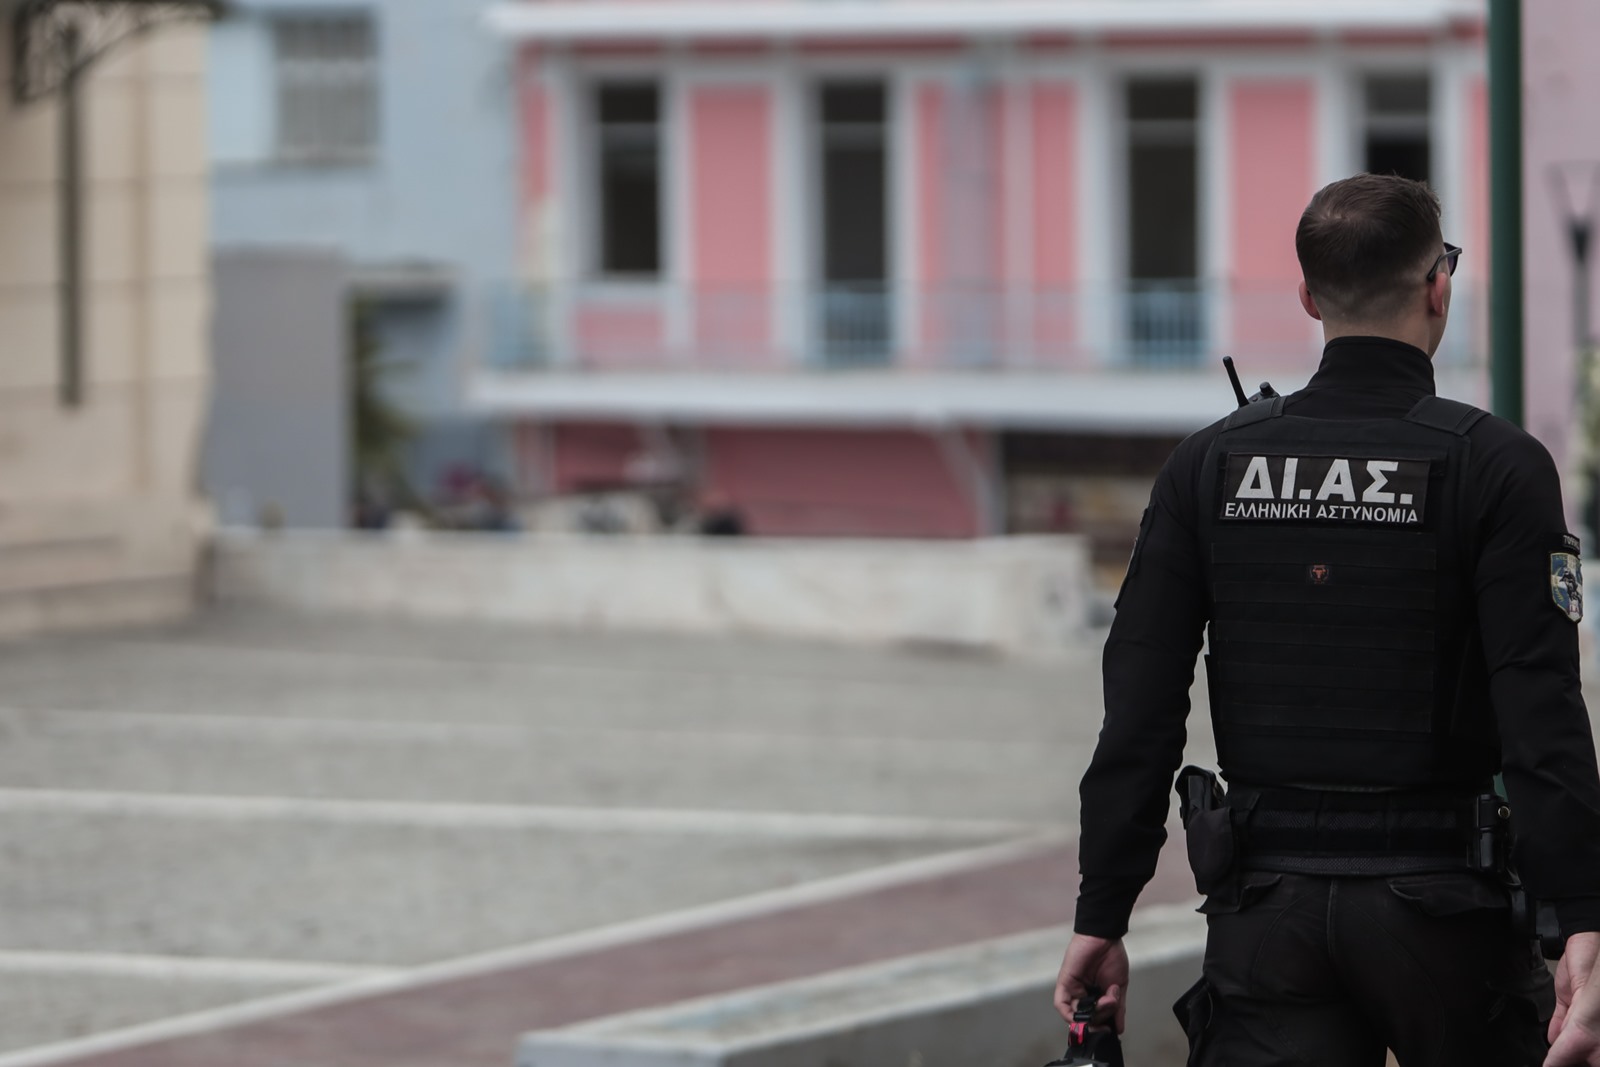 Αστυνομικός Χανιά: Οι απειλές του αξιωματικού της ΕΛ.ΑΣ. κατά τη σύλληψή του